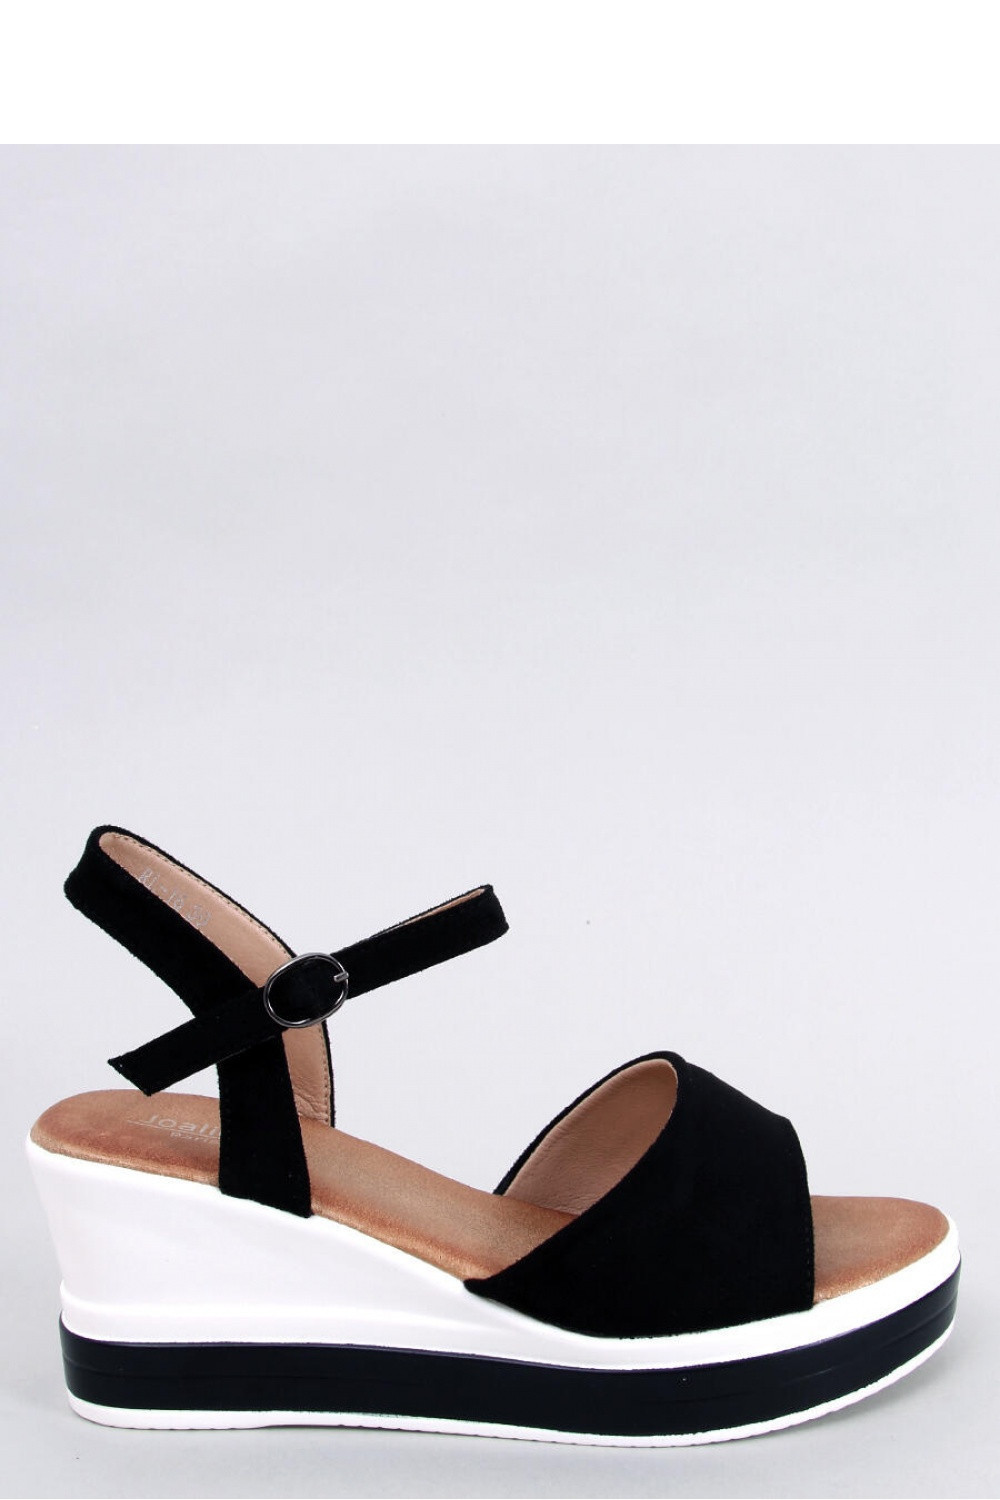 Dámské sandály na podpatku Paris černo bílá 38 model 18799454 - Inello